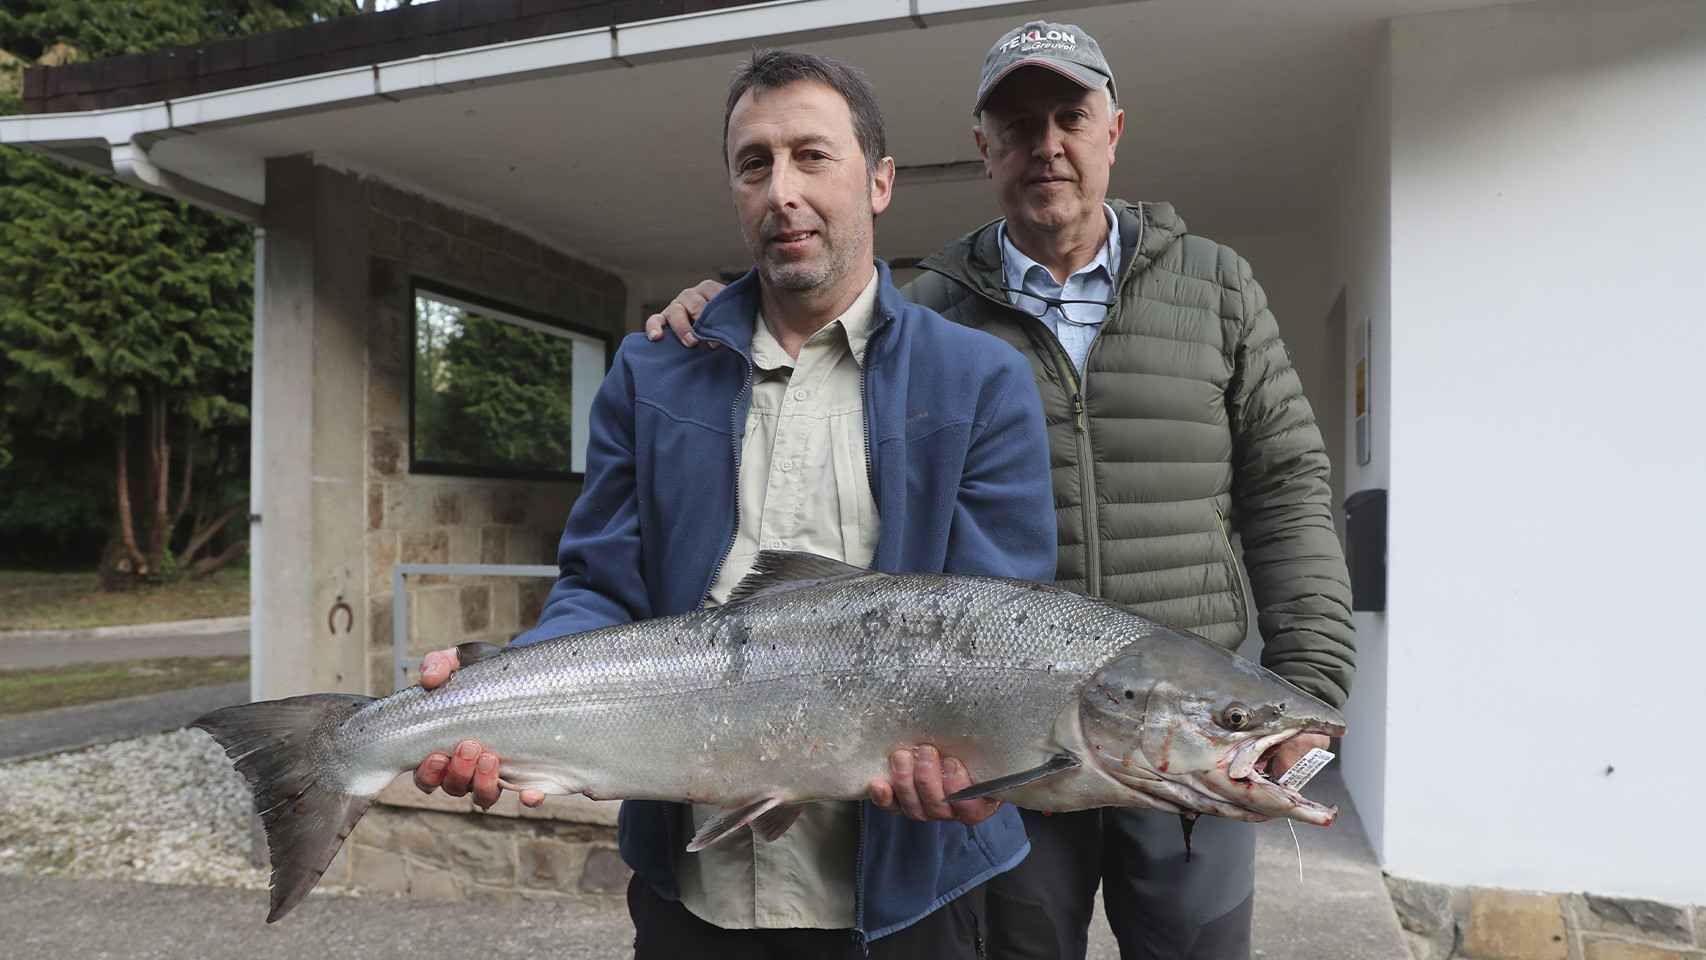 La fiebre por el último salmón español  en venta :  Por 19.000€ a ver quién es el guapo que no lo mata 